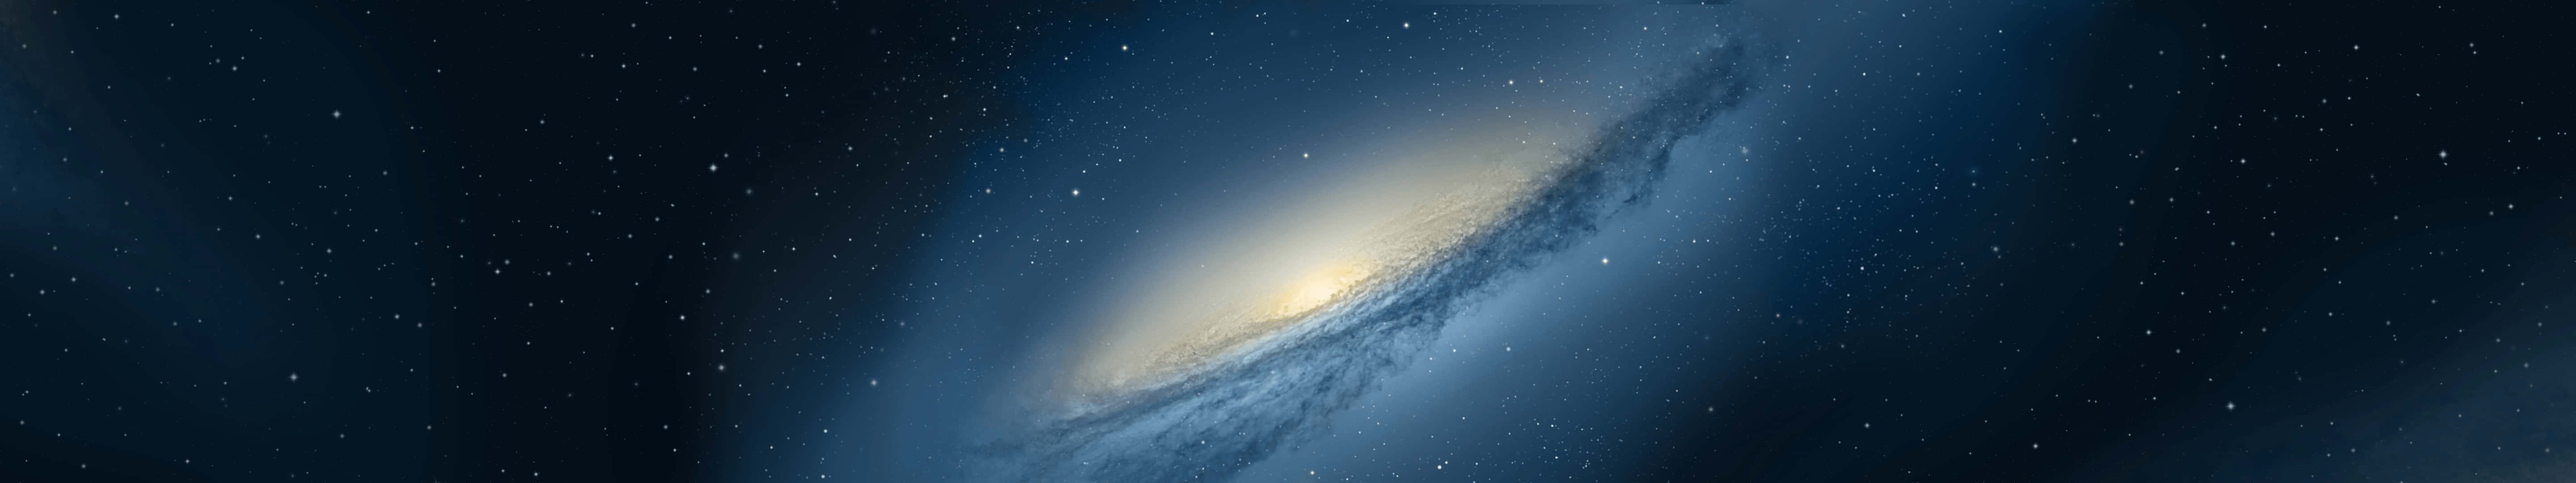 Galaxy Wallpapers - Galaxy Wallpapers Wallpaper